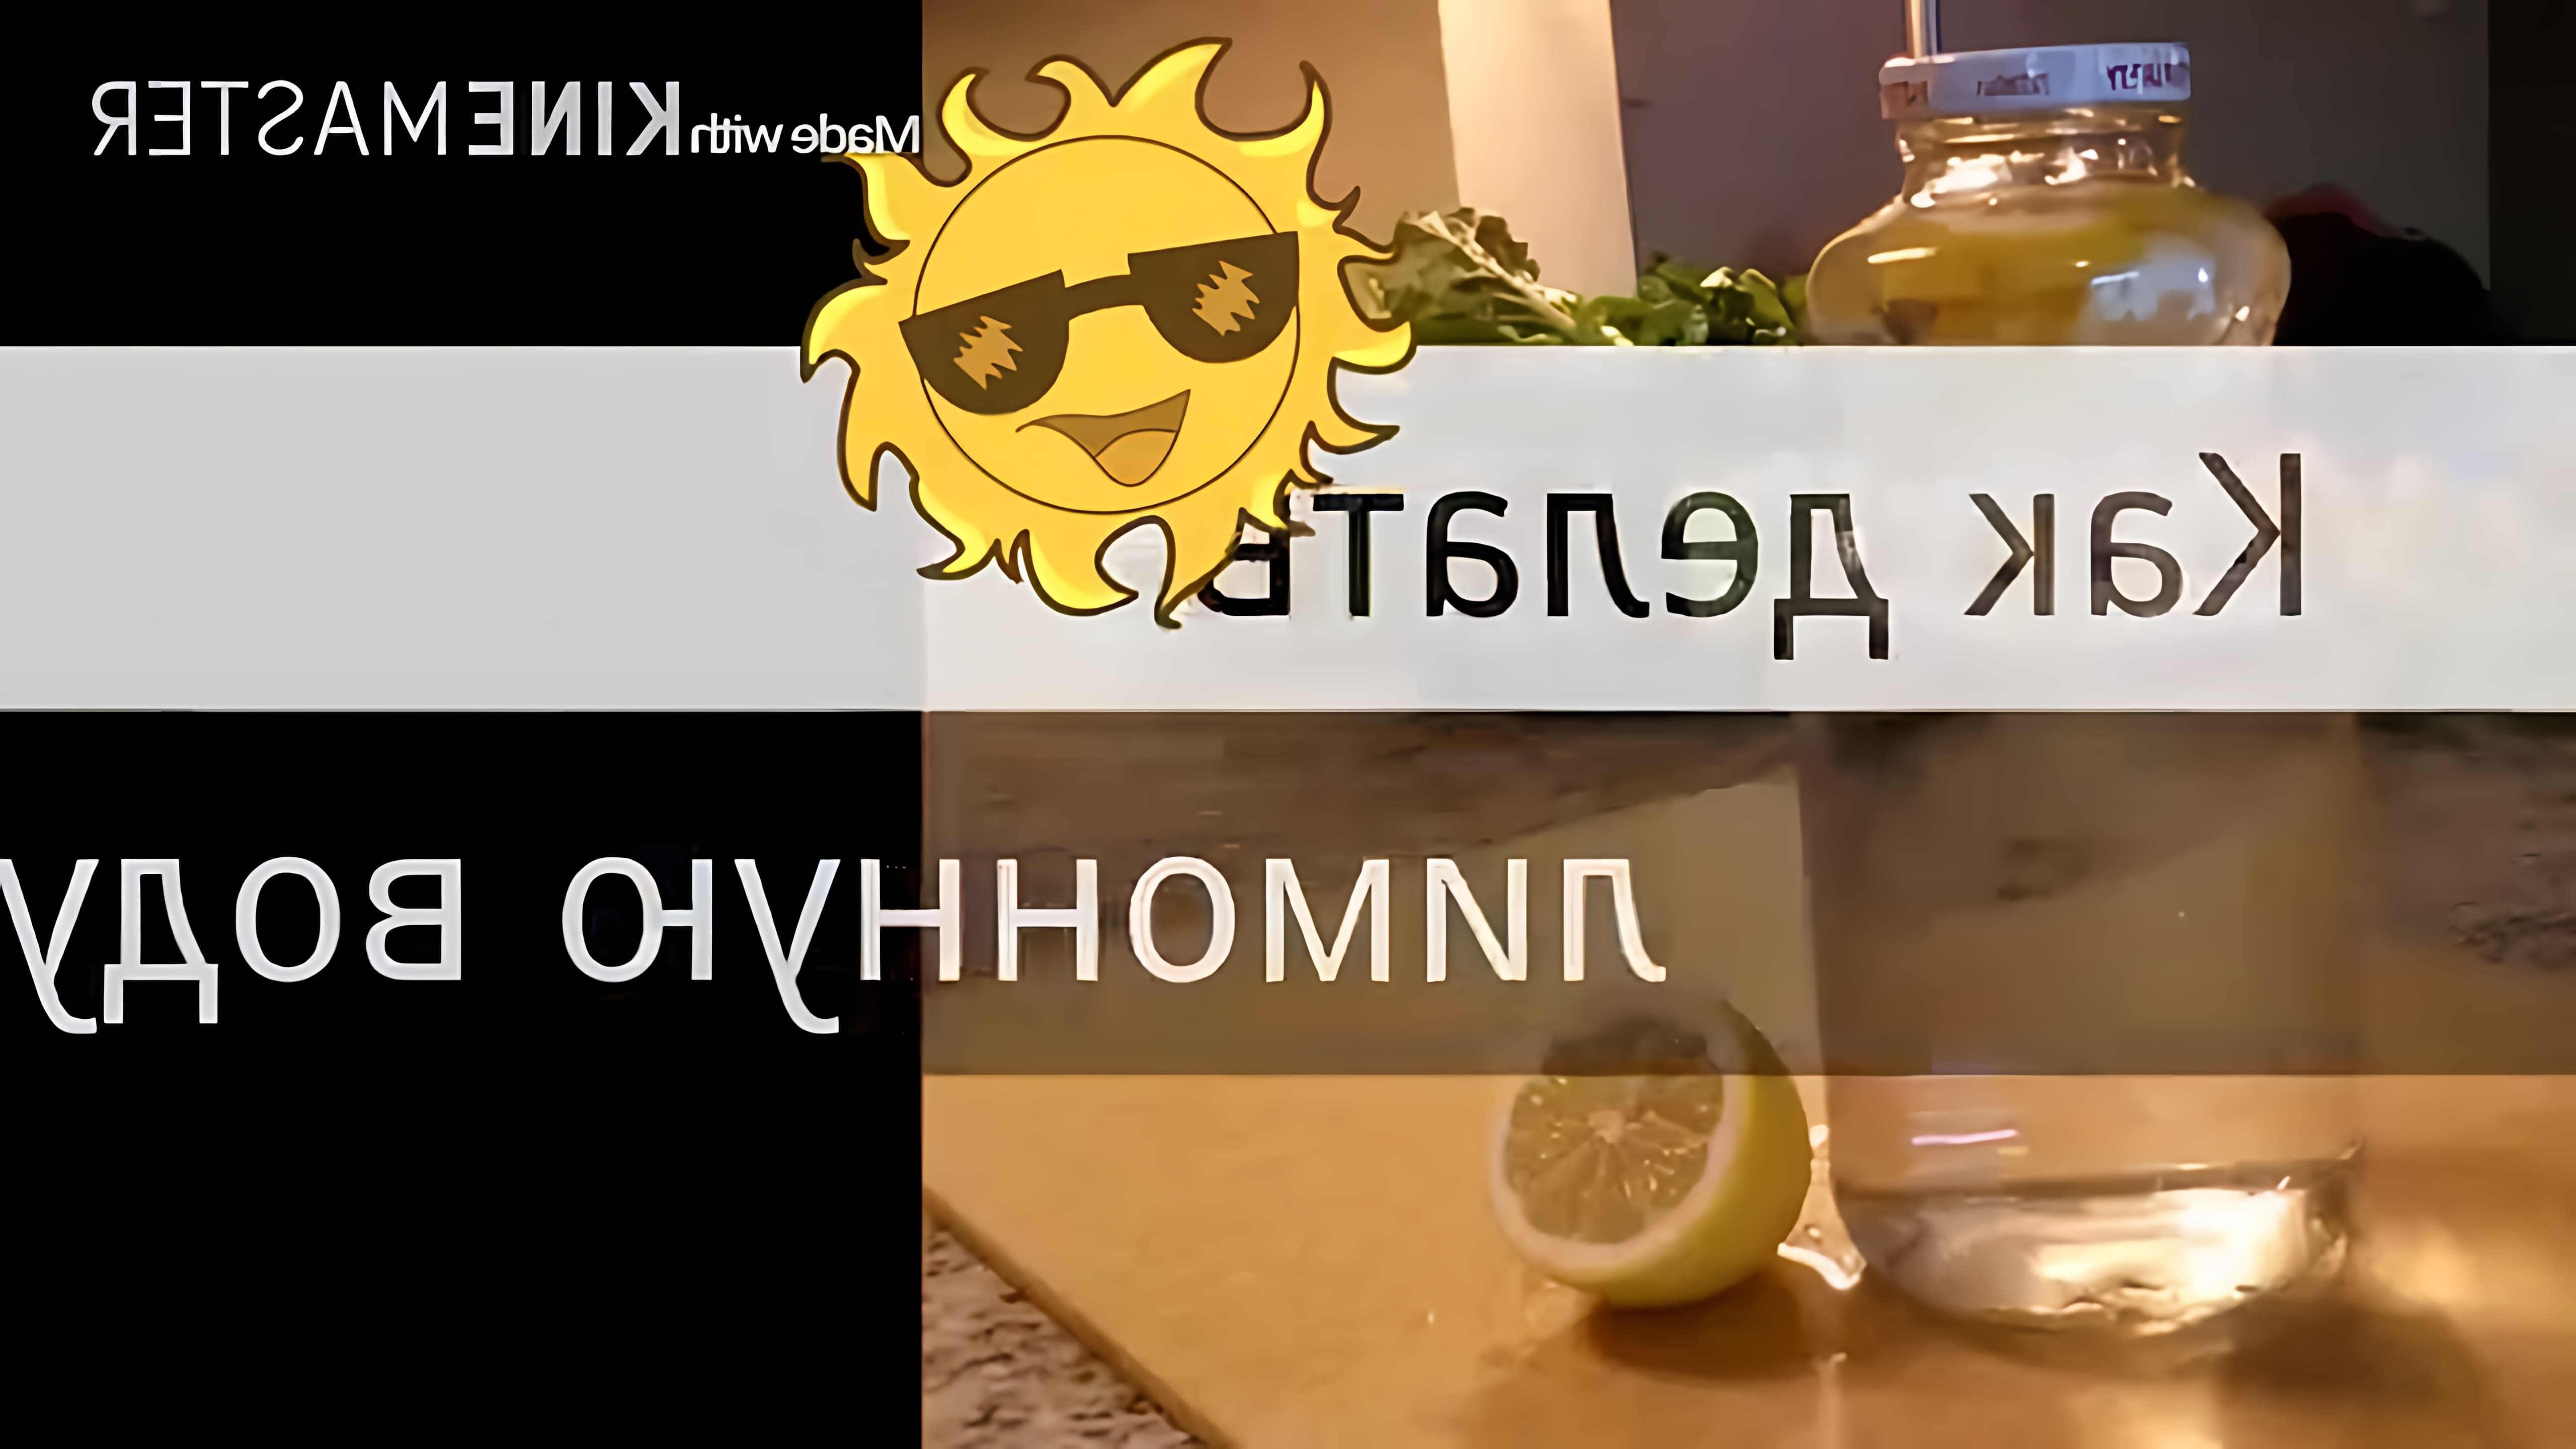 В этом видео демонстрируется процесс приготовления лимонной воды